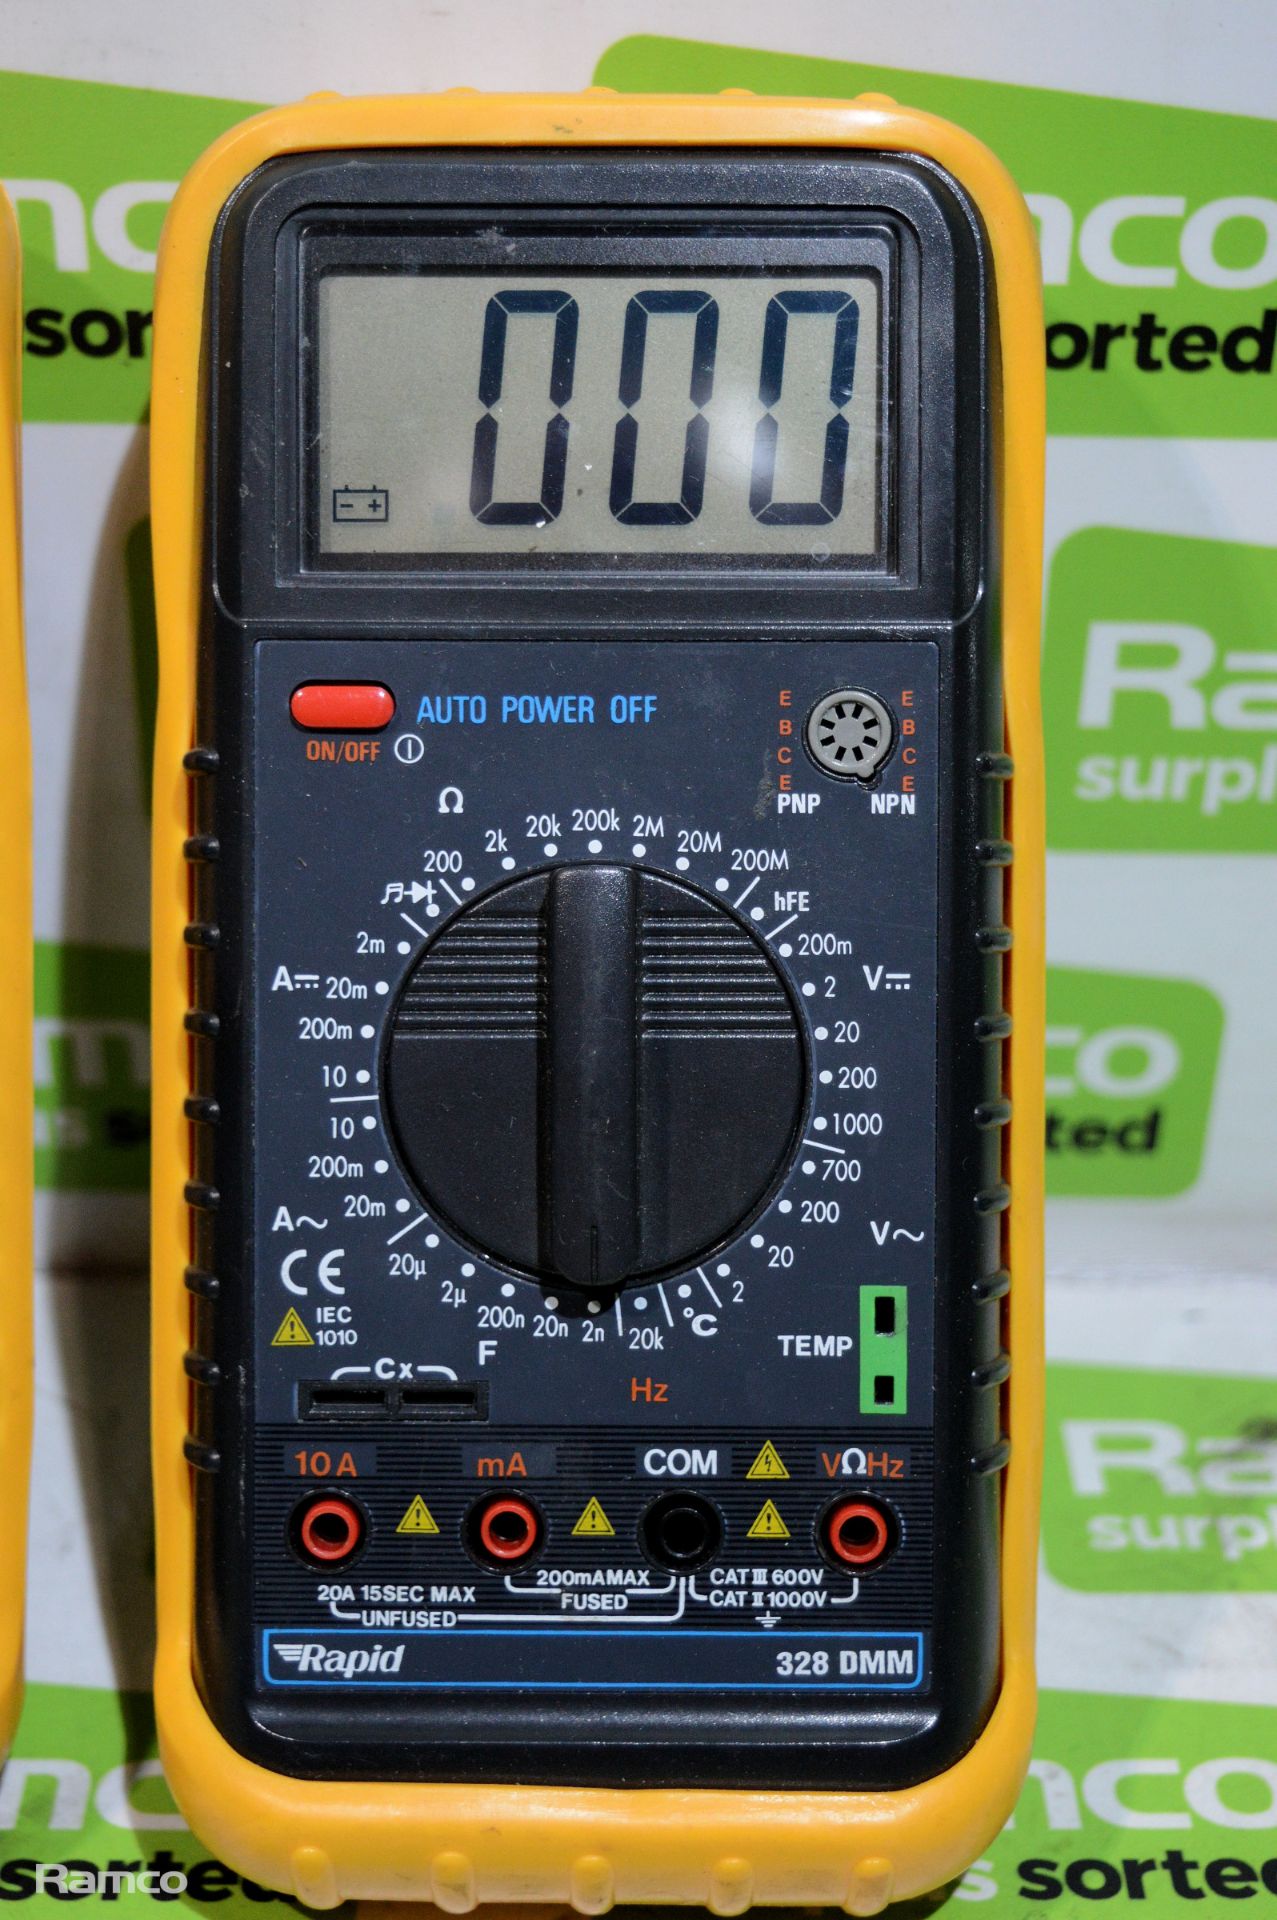 4x Rapid 328 DMM Digital Multimeters - Image 5 of 5